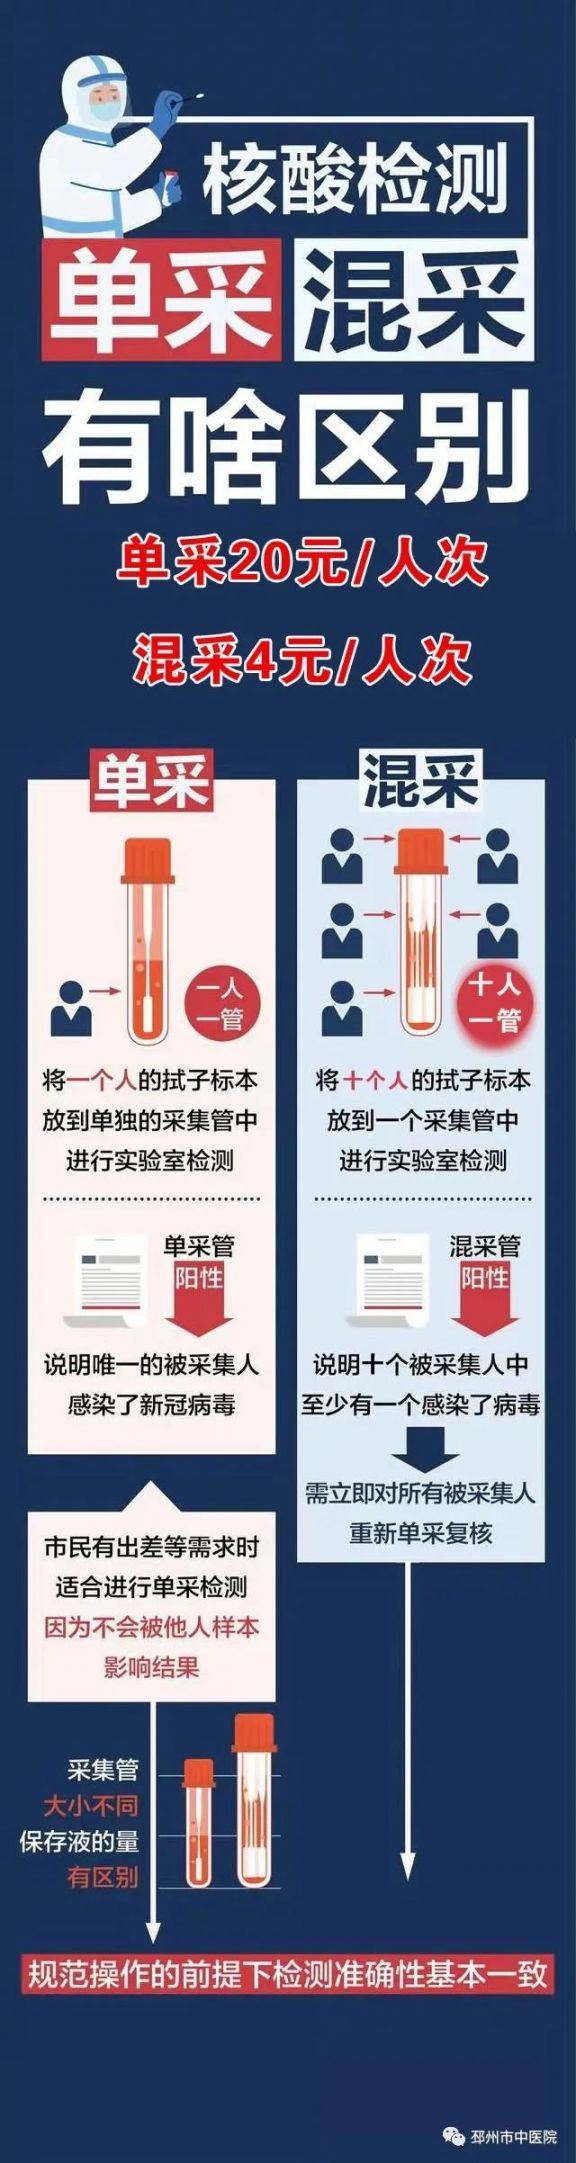 邳州市中医院已开启核酸检测混采服务